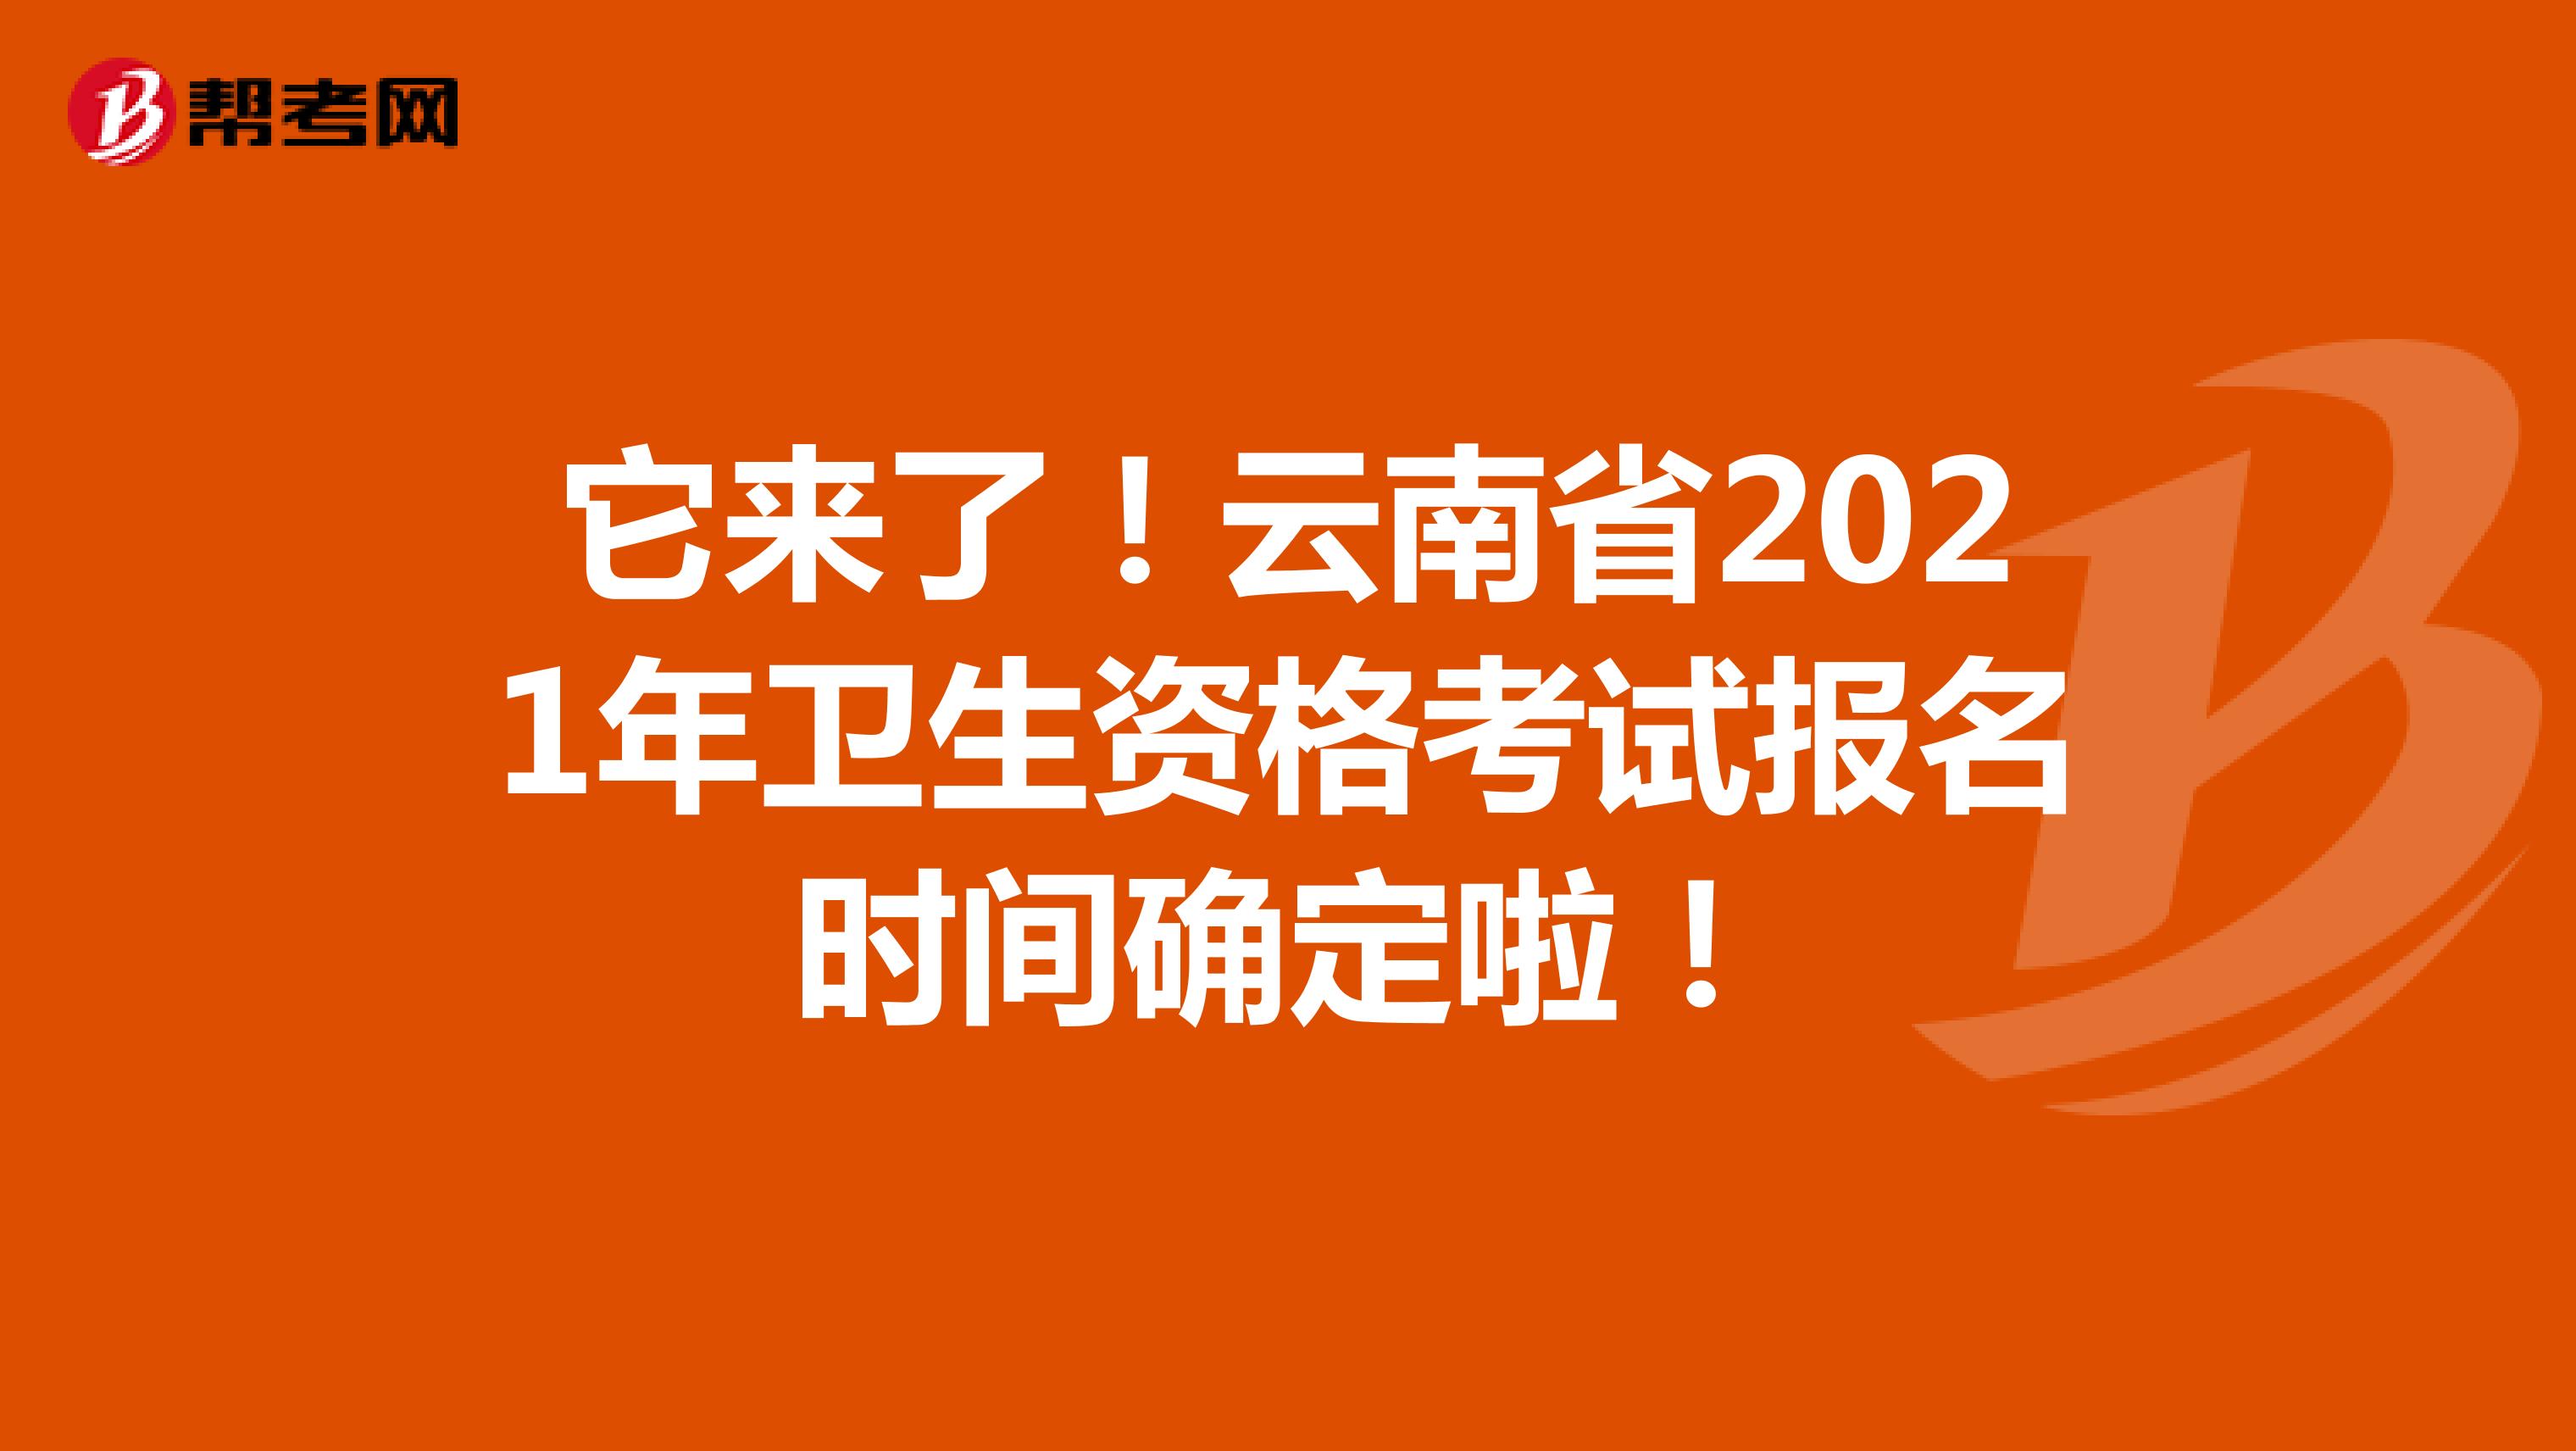 它来了！云南省2021年卫生资格考试报名时间确定啦！